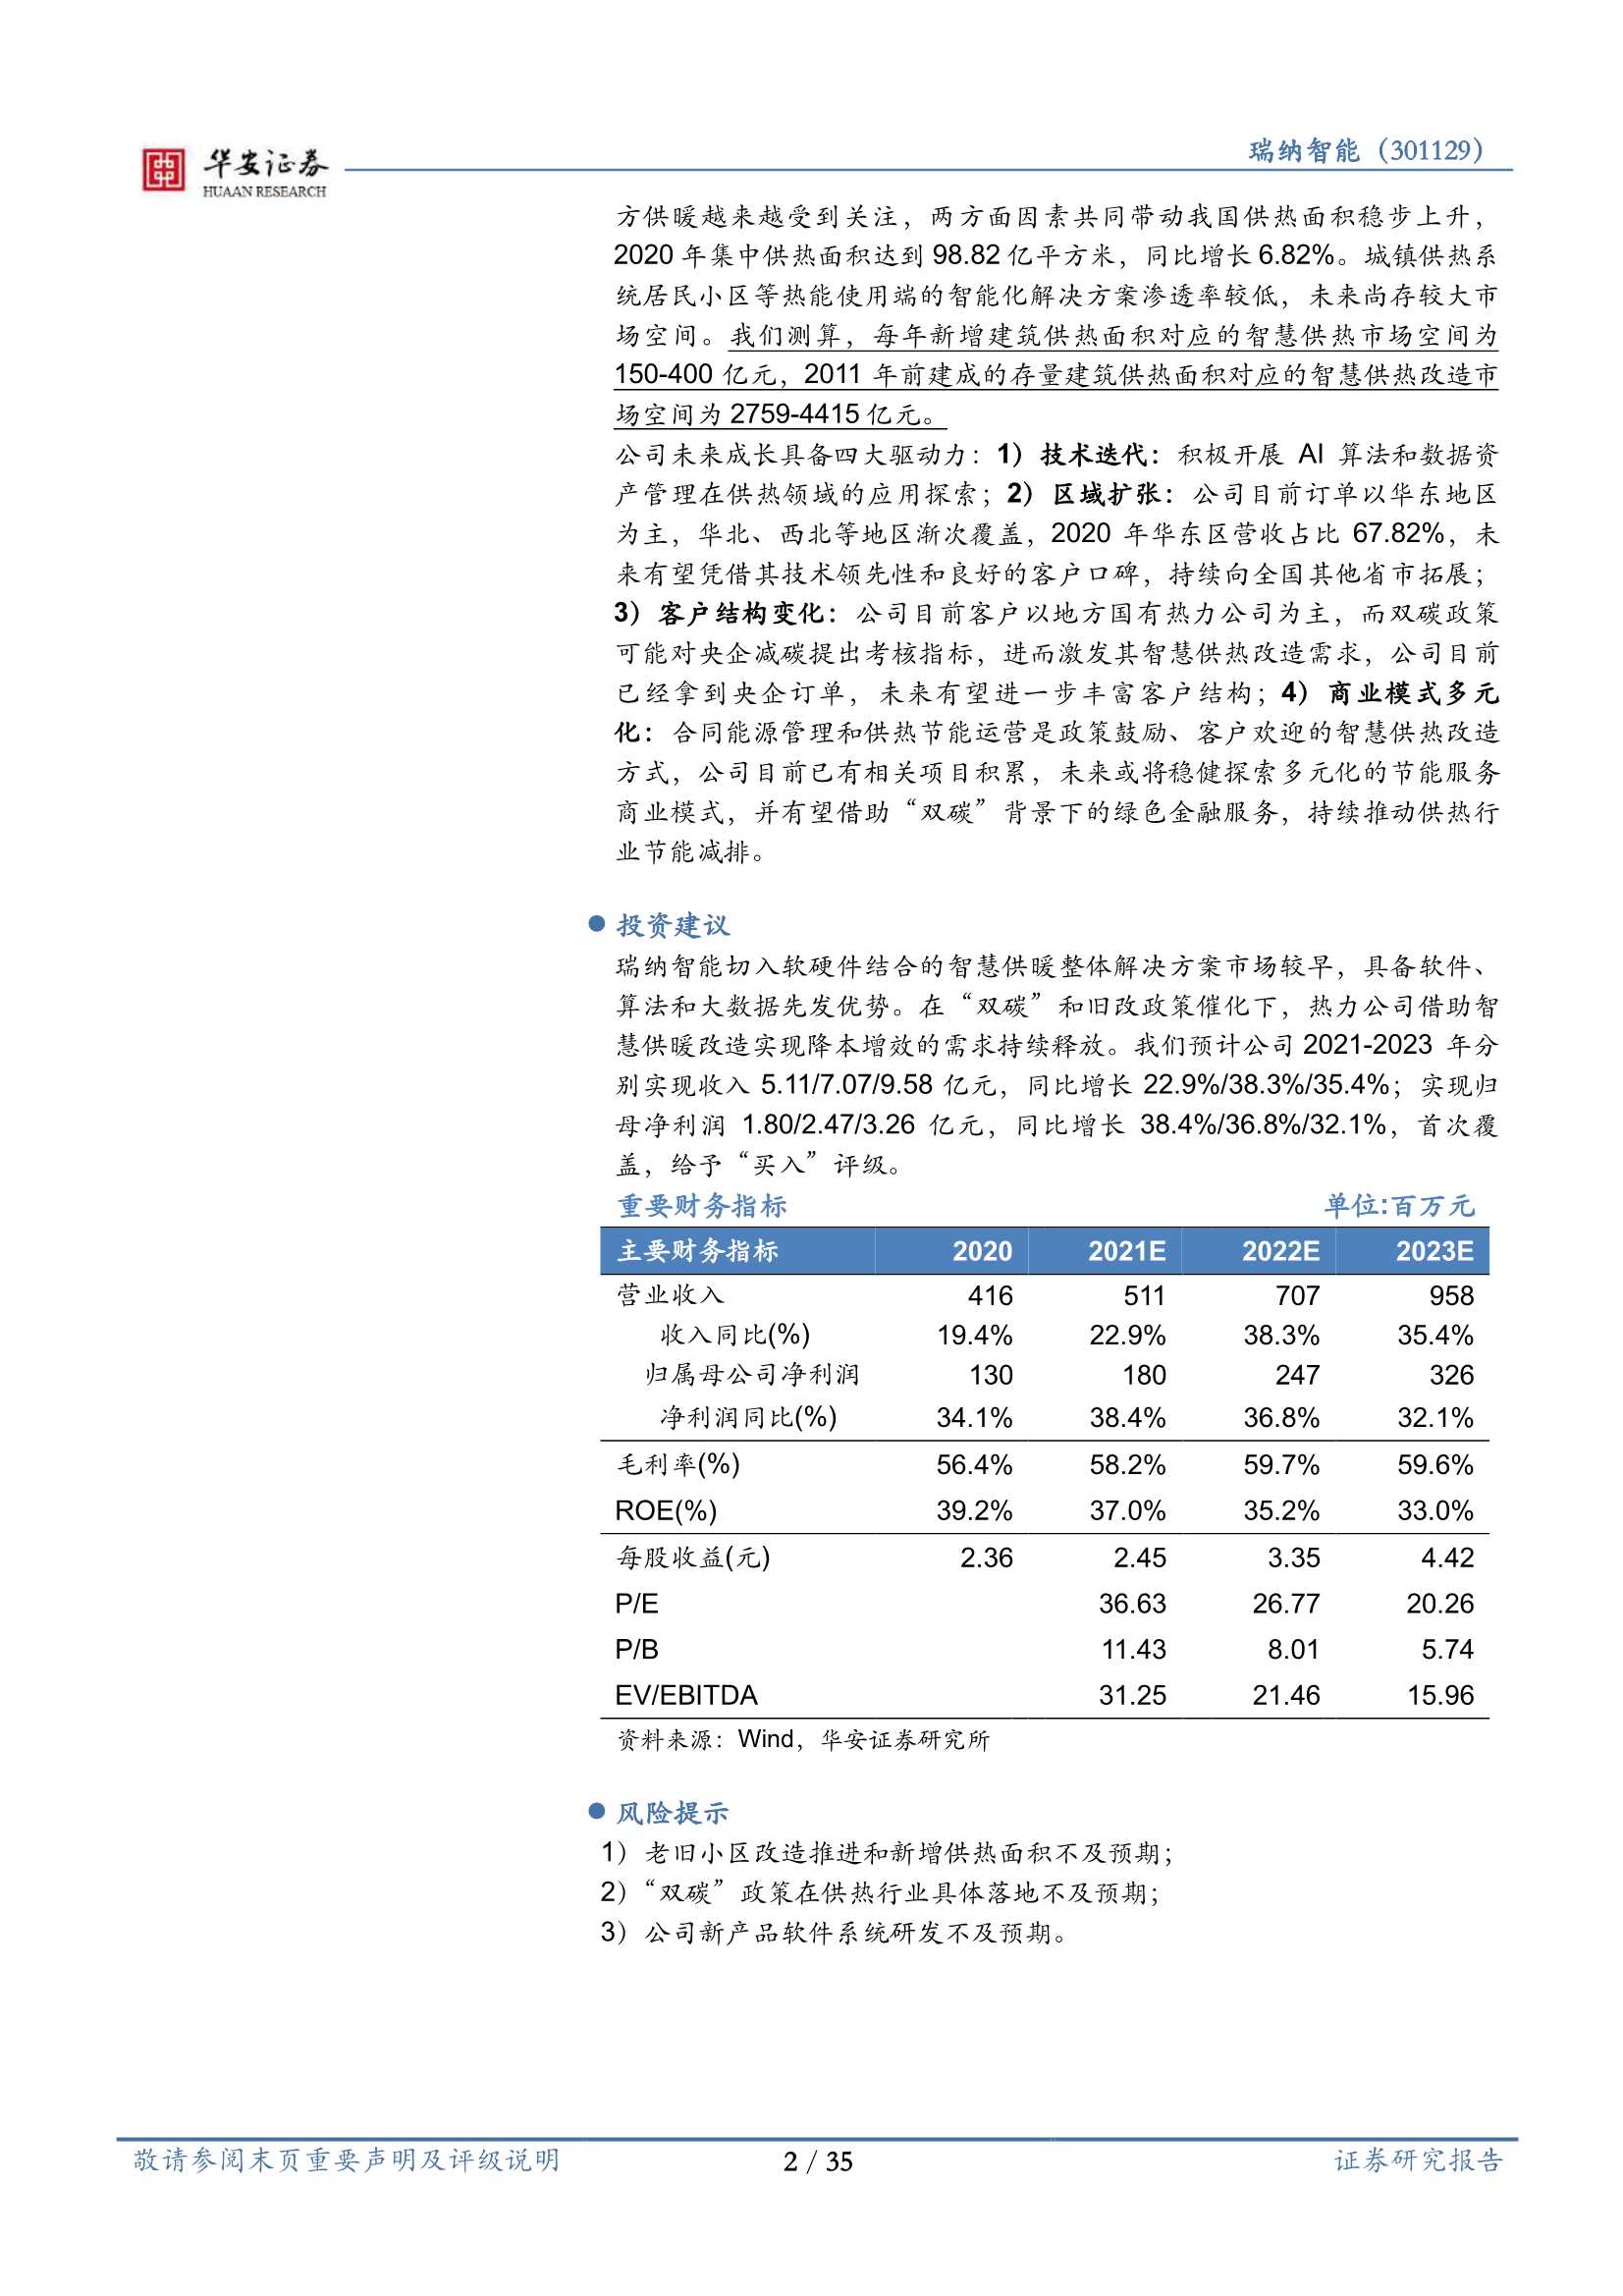 华安证券-瑞纳智能-301129-领航智慧供热，共赢“双碳”时代-20211223-35页